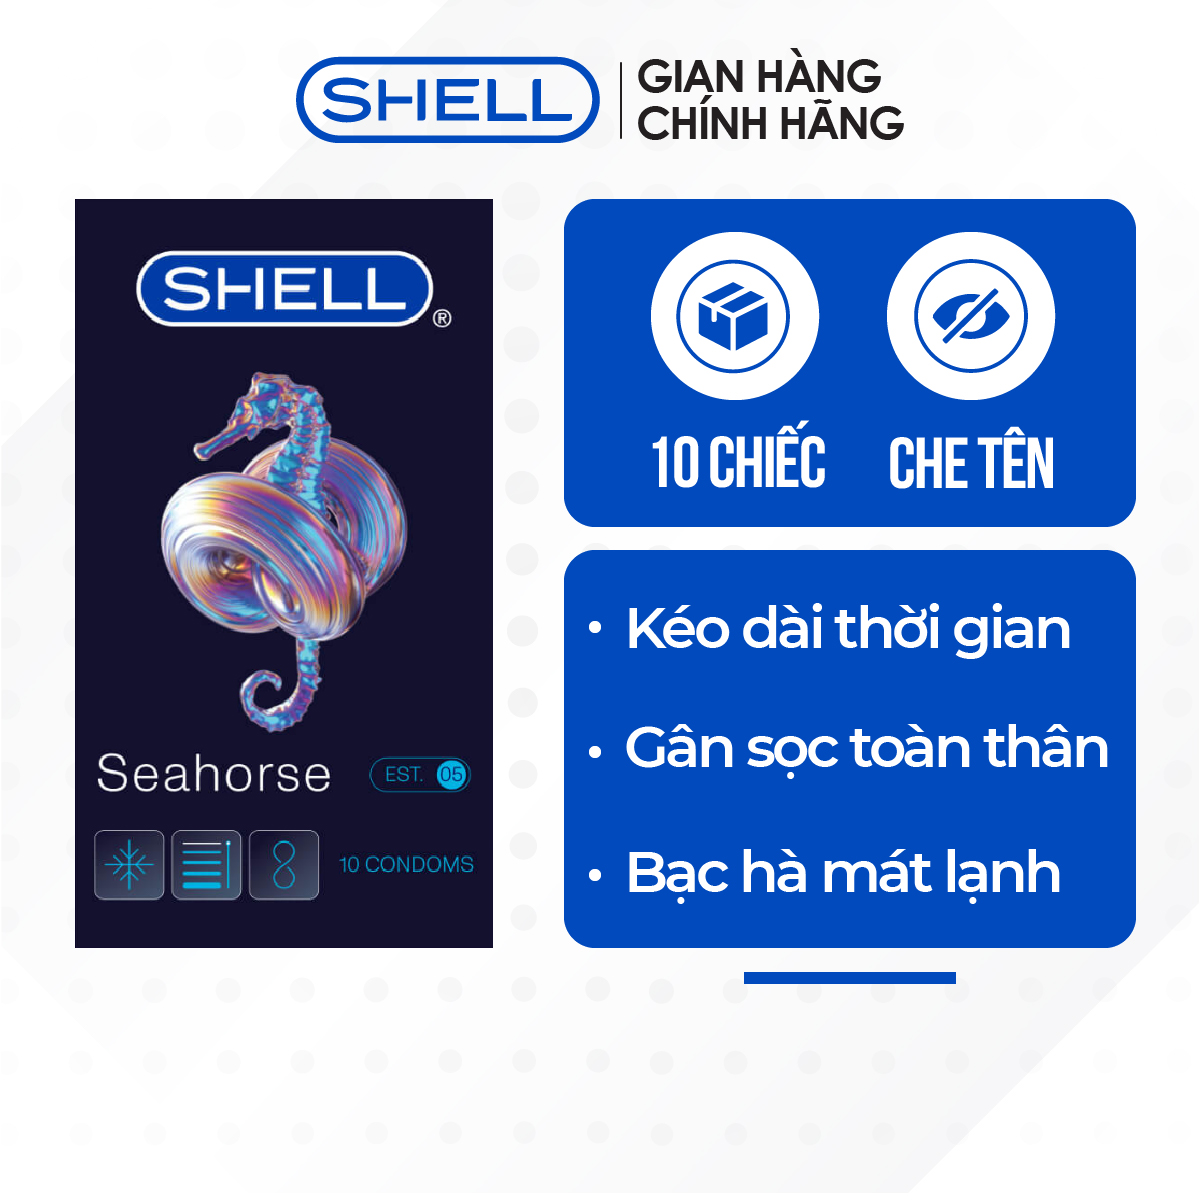 [Hộp 10 cái] Bao cao su Shell Seahorse - Kéo dài thời gian 